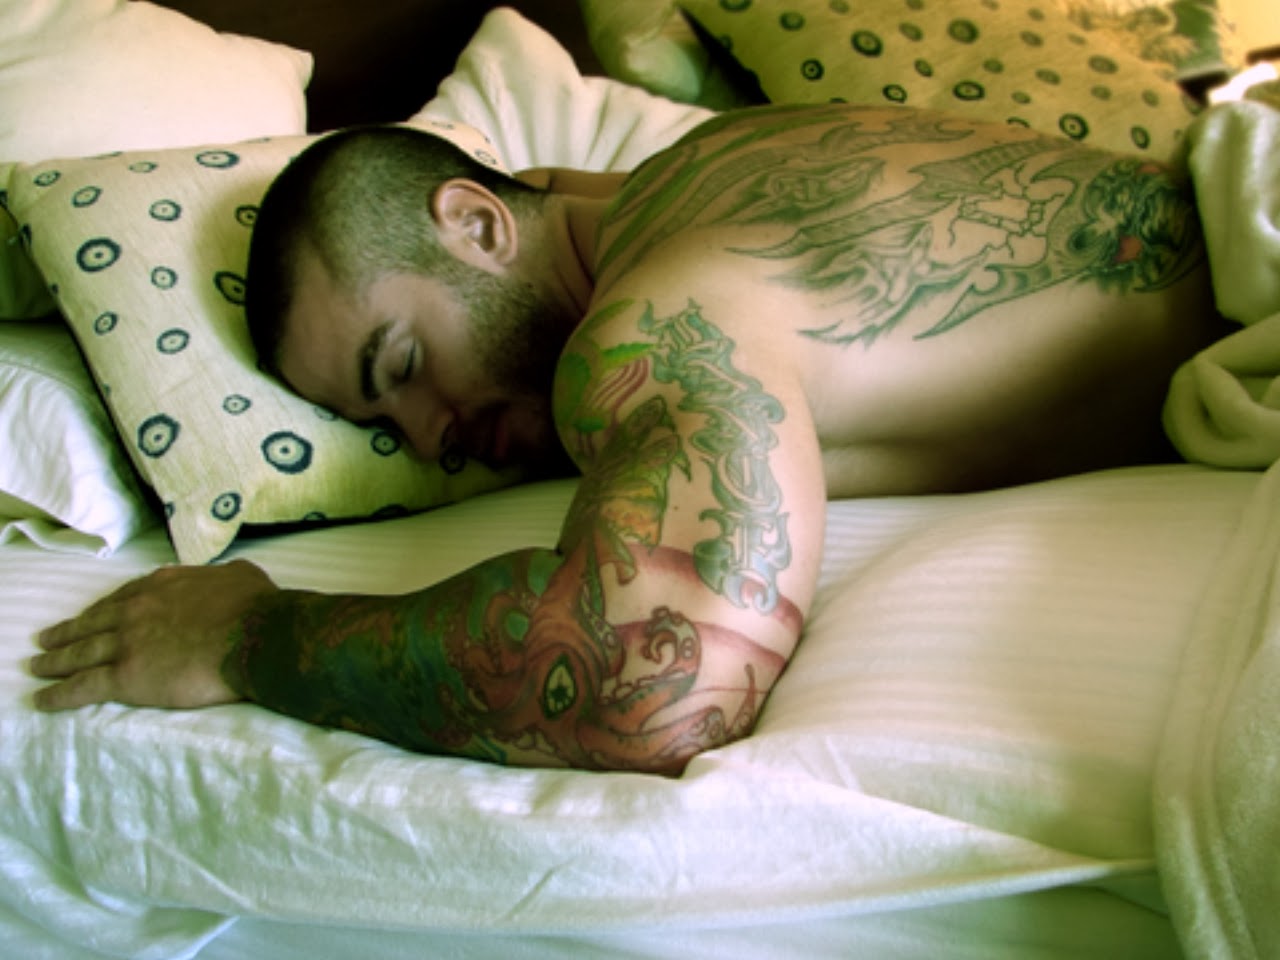 Татуированный парень с камерой имеет на кровати подружку в ночной футболке